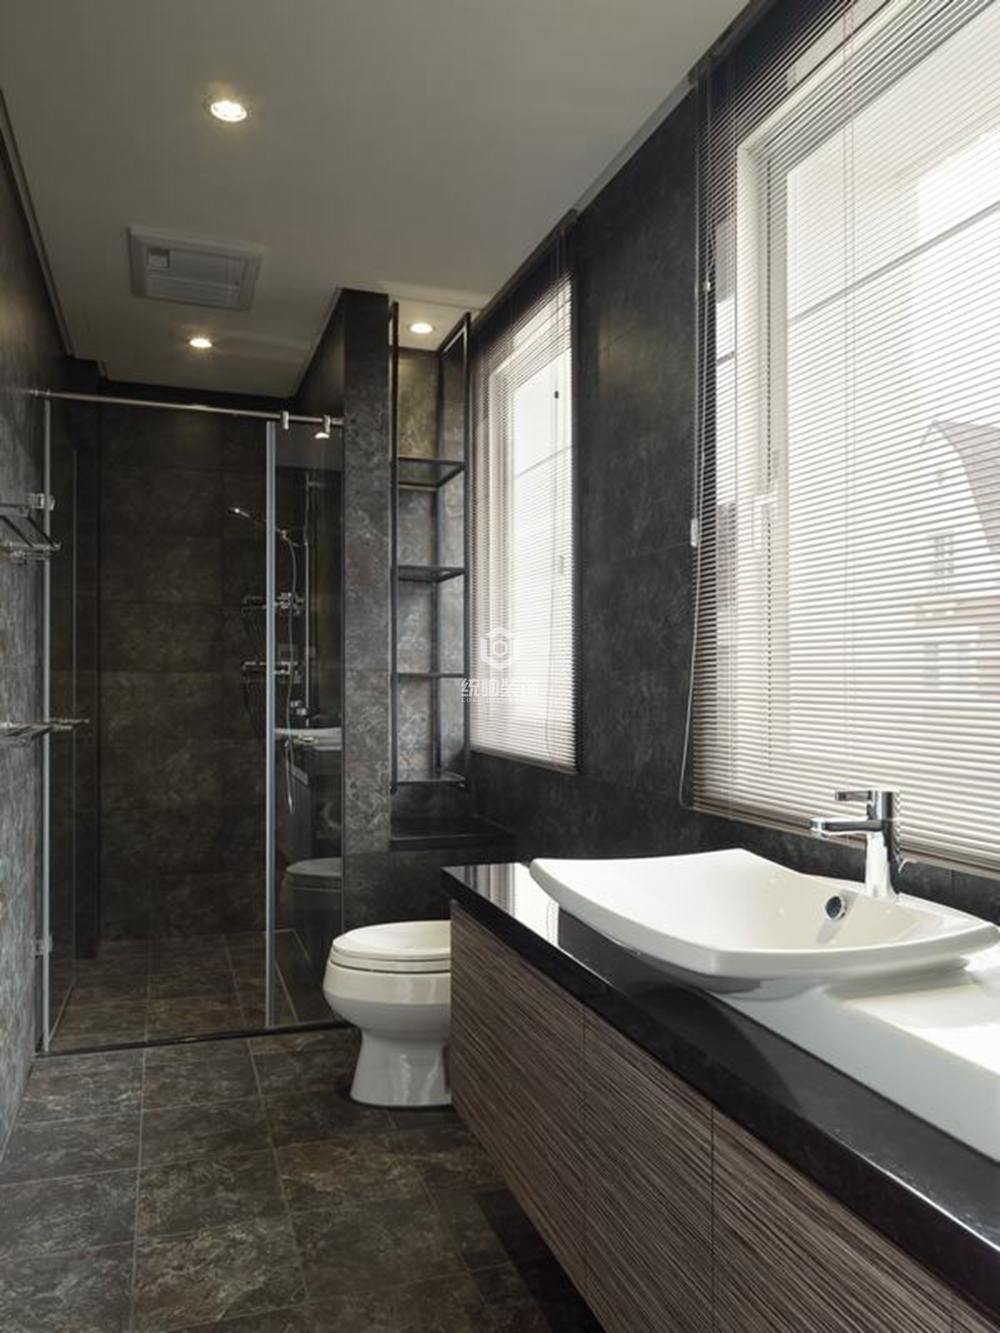 青浦区晴壁园420平方新古典风格别墅卫生间装修效果图